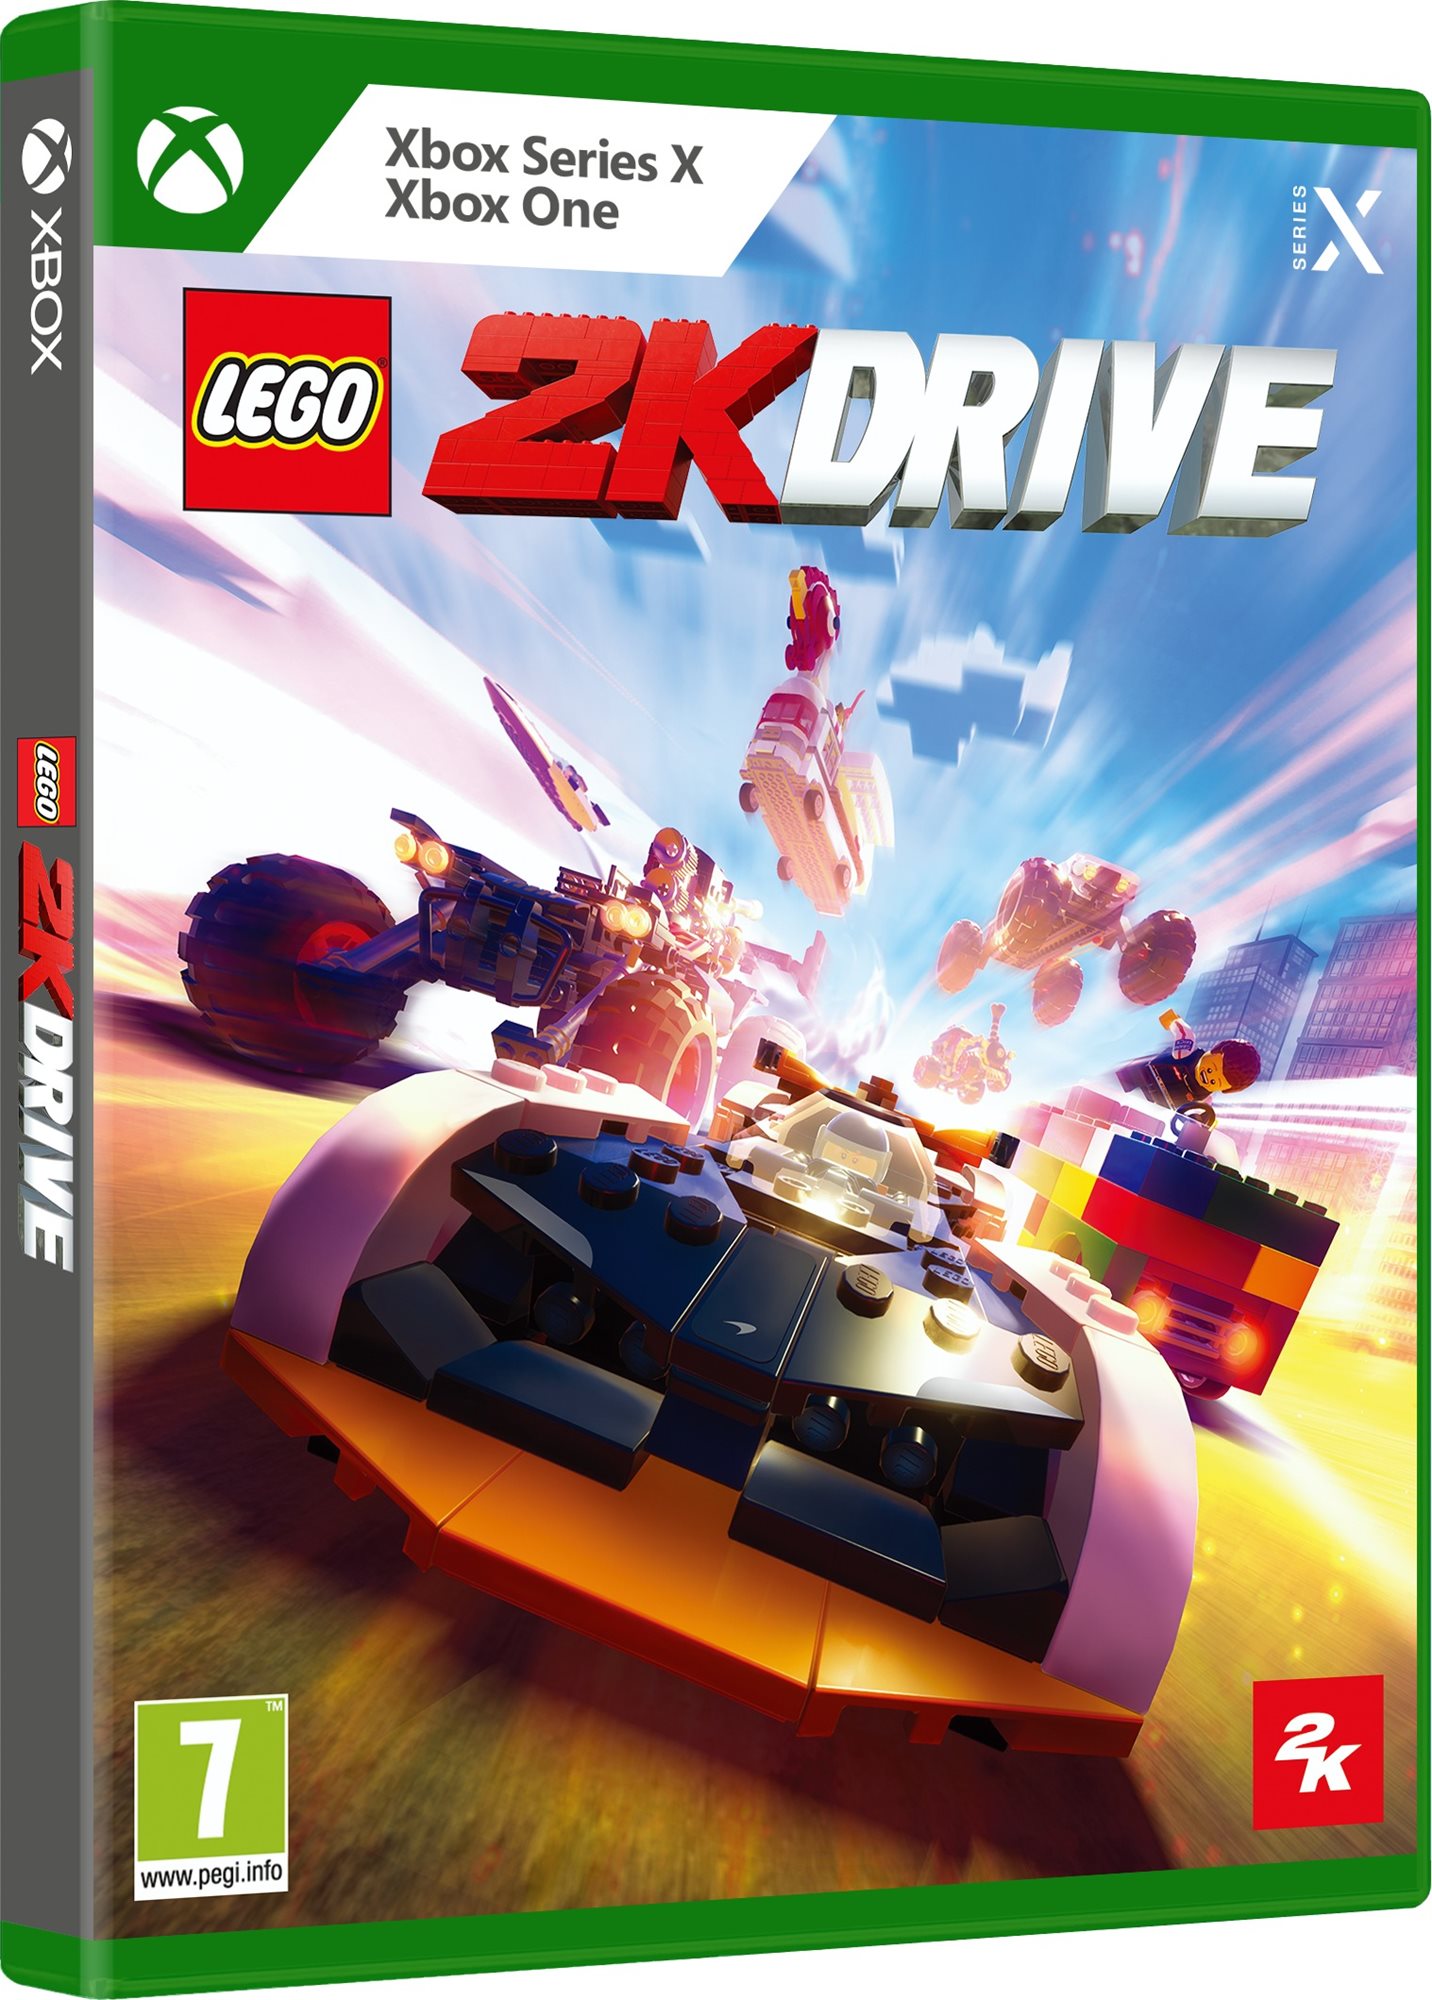 LEGO 2K Drive - Xbox